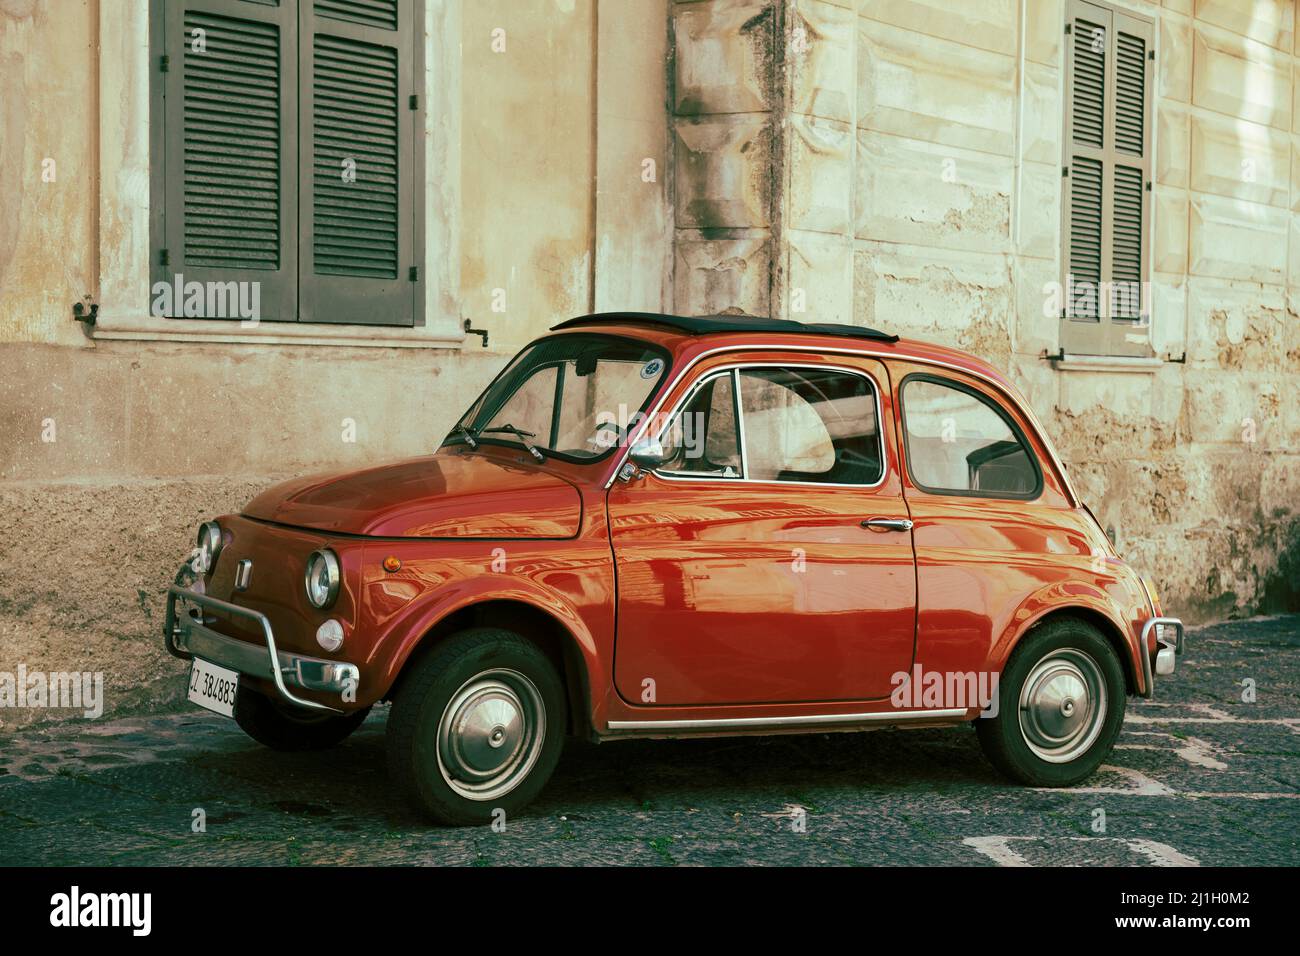 Red Fiat Cinquecento estacionado en la ciudad italiana Foto de stock